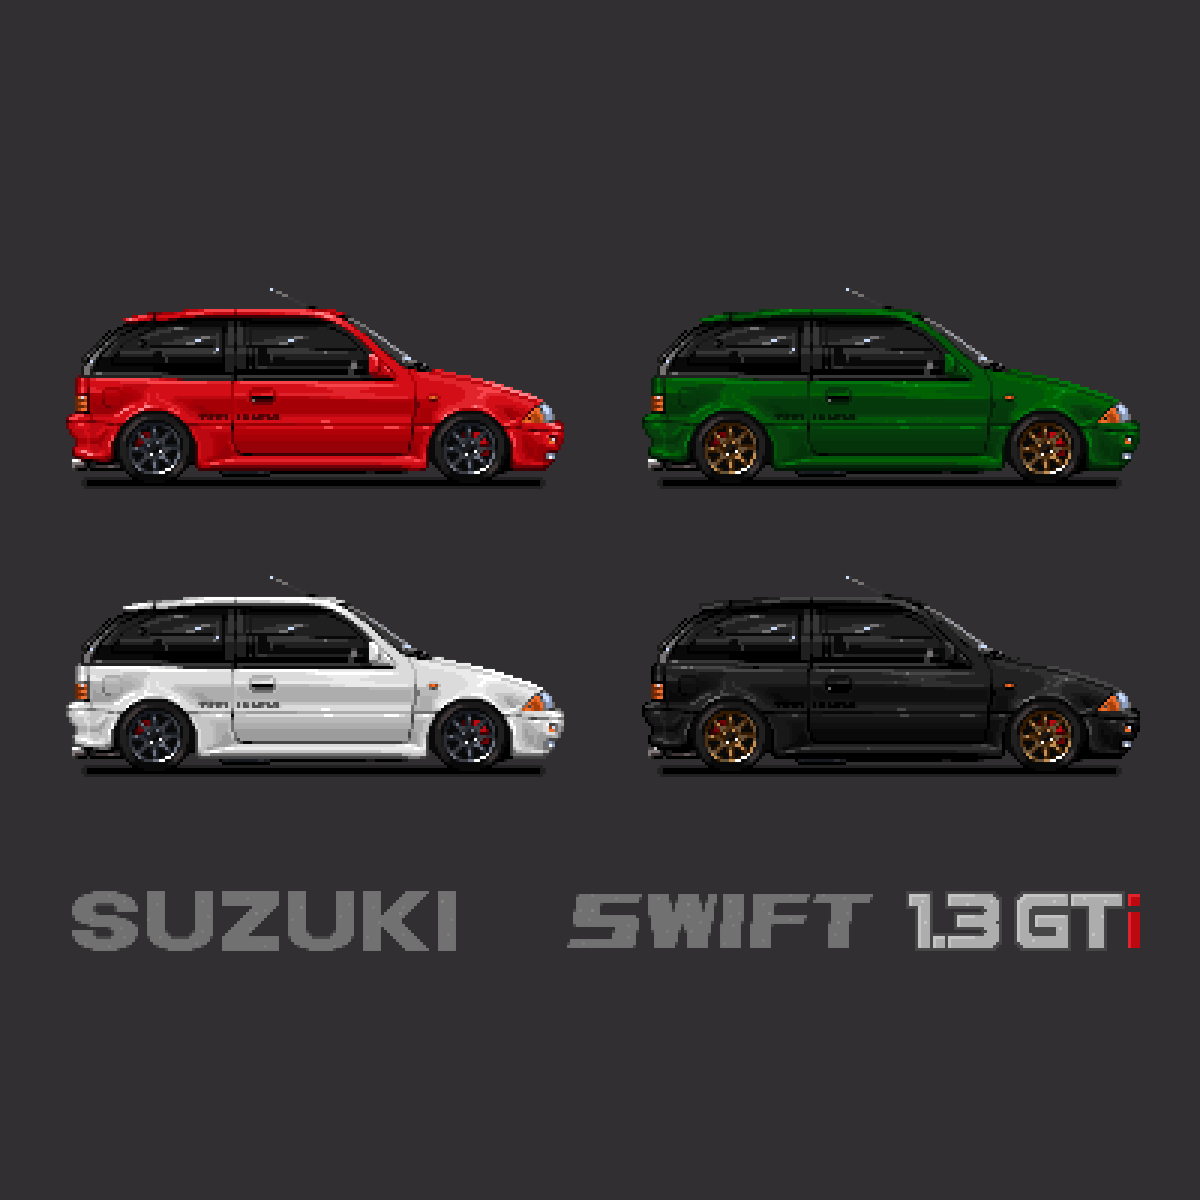 Suzuki Swift Repository On Twitter: 